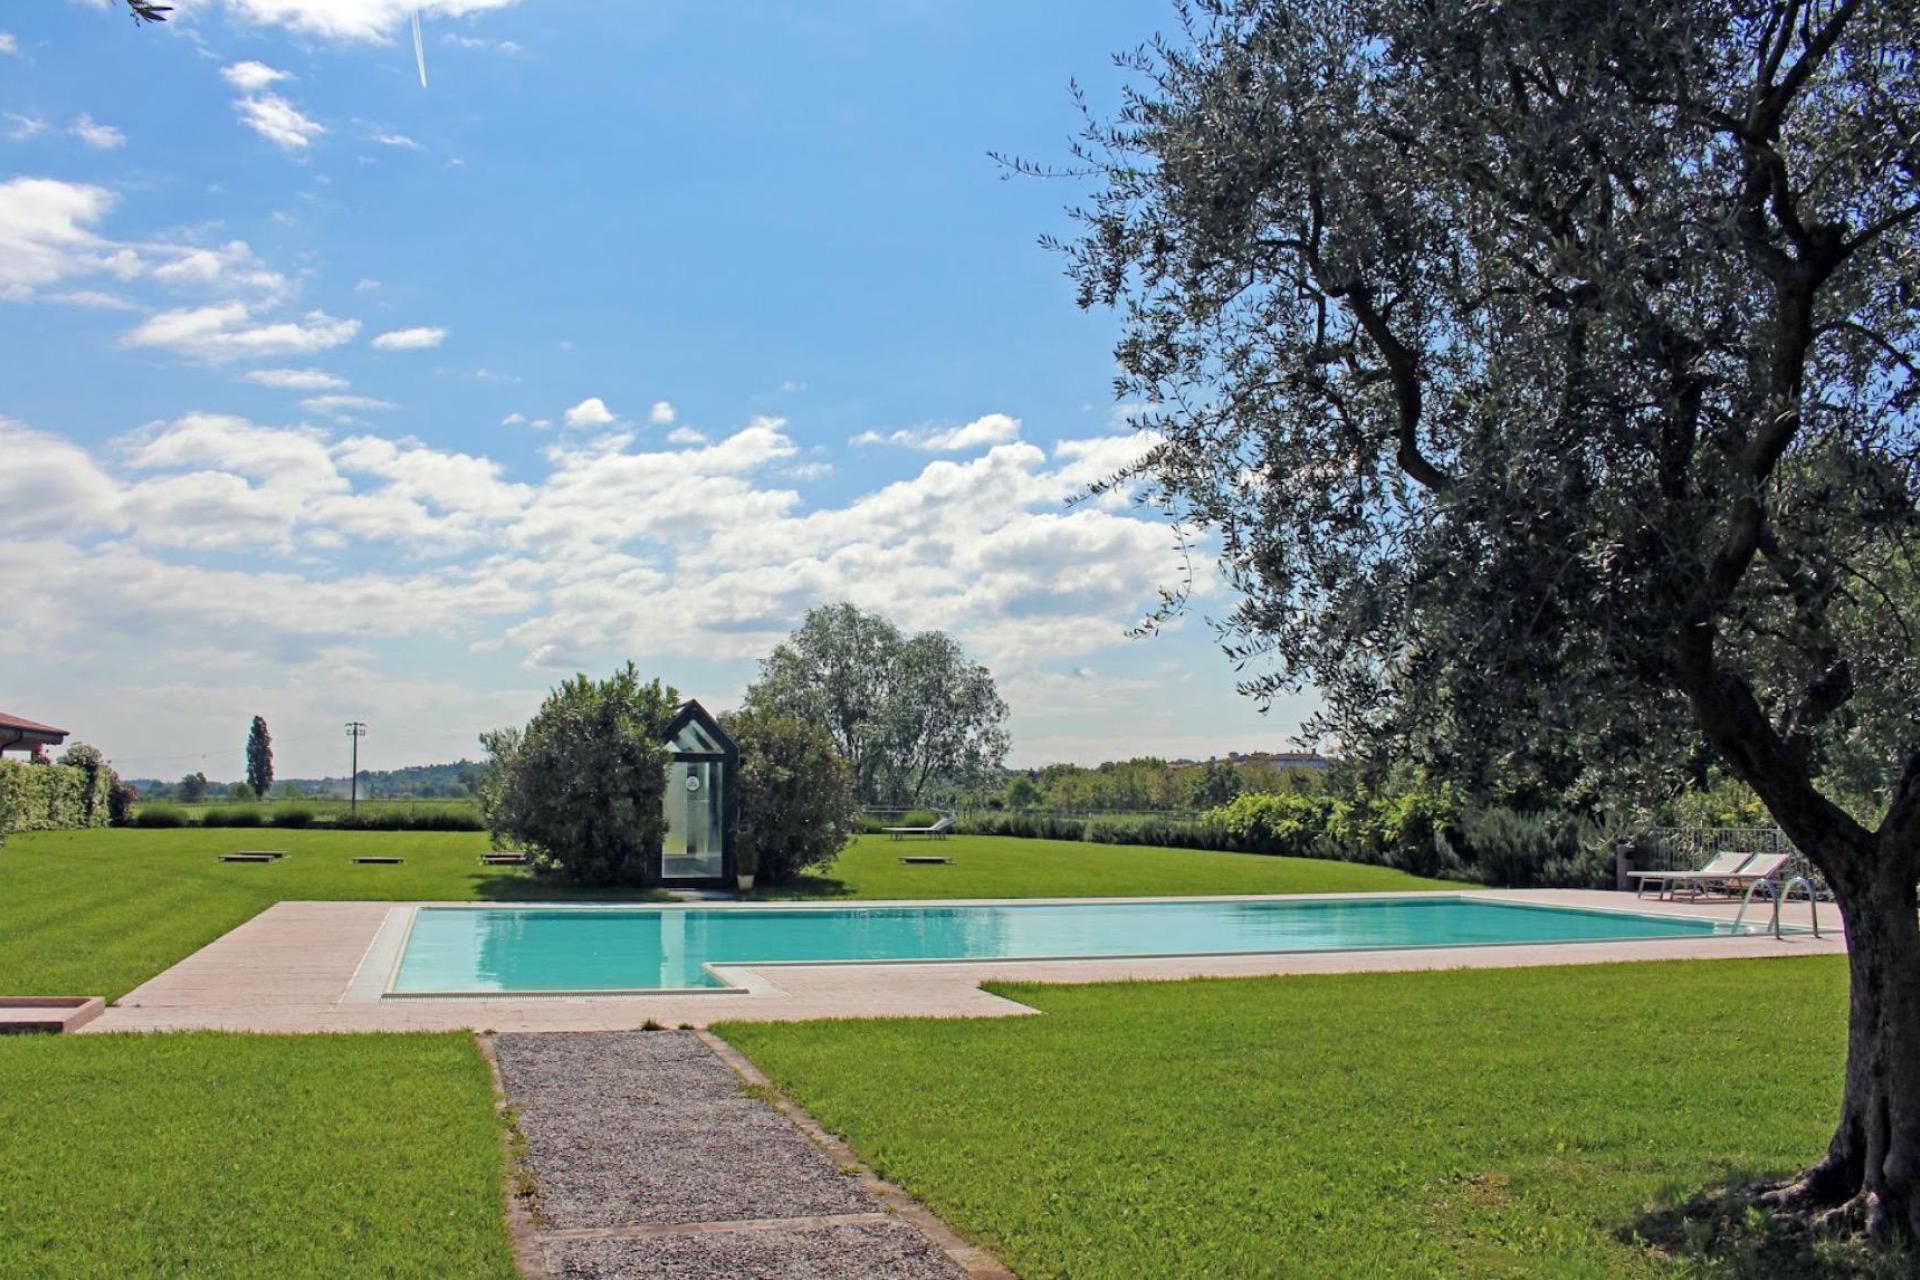 Agriturismo Lake Garda, surrounded by vineyards